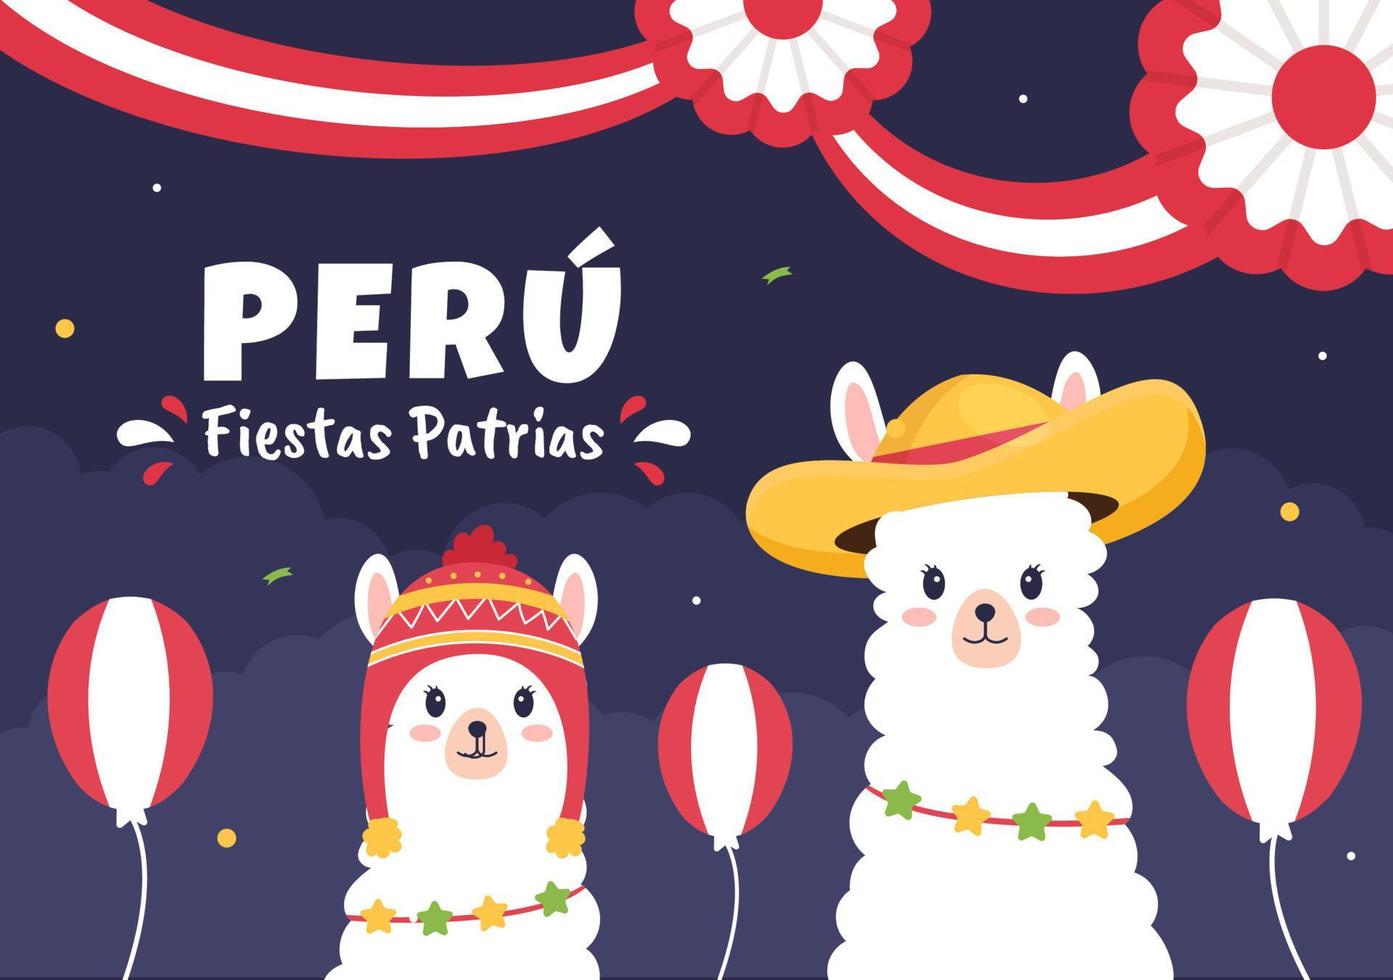 felices fiestas patrias ou illustration de dessin animé mignon fête de l'indépendance péruvienne avec drapeau pour la fête nationale du pérou le 28 juillet sur fond de style plat vecteur